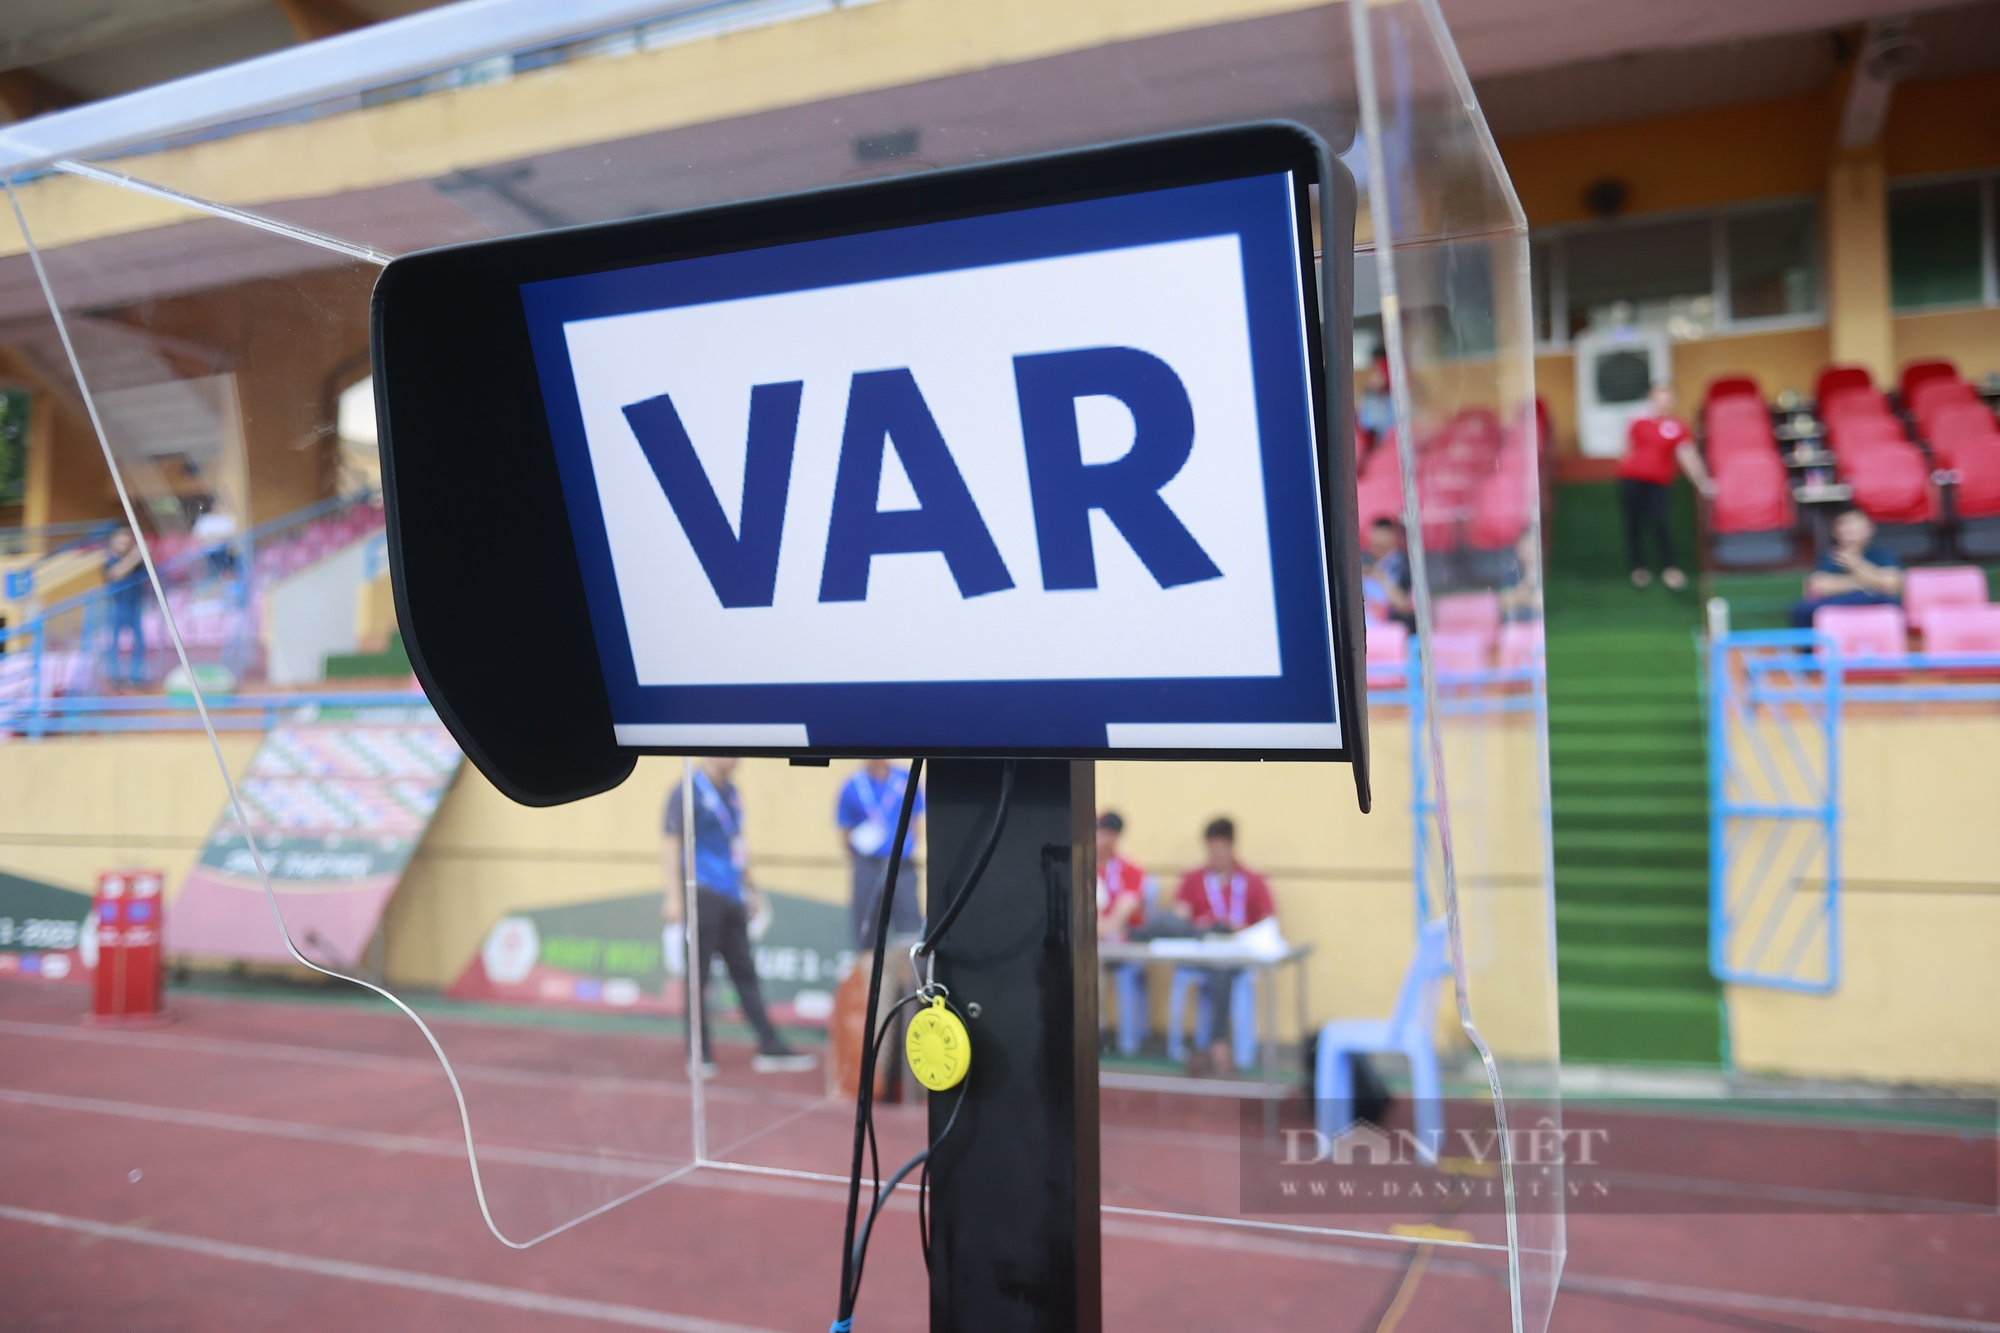 Cận cảnh công nghệ VAR xuất hiện tại V.League